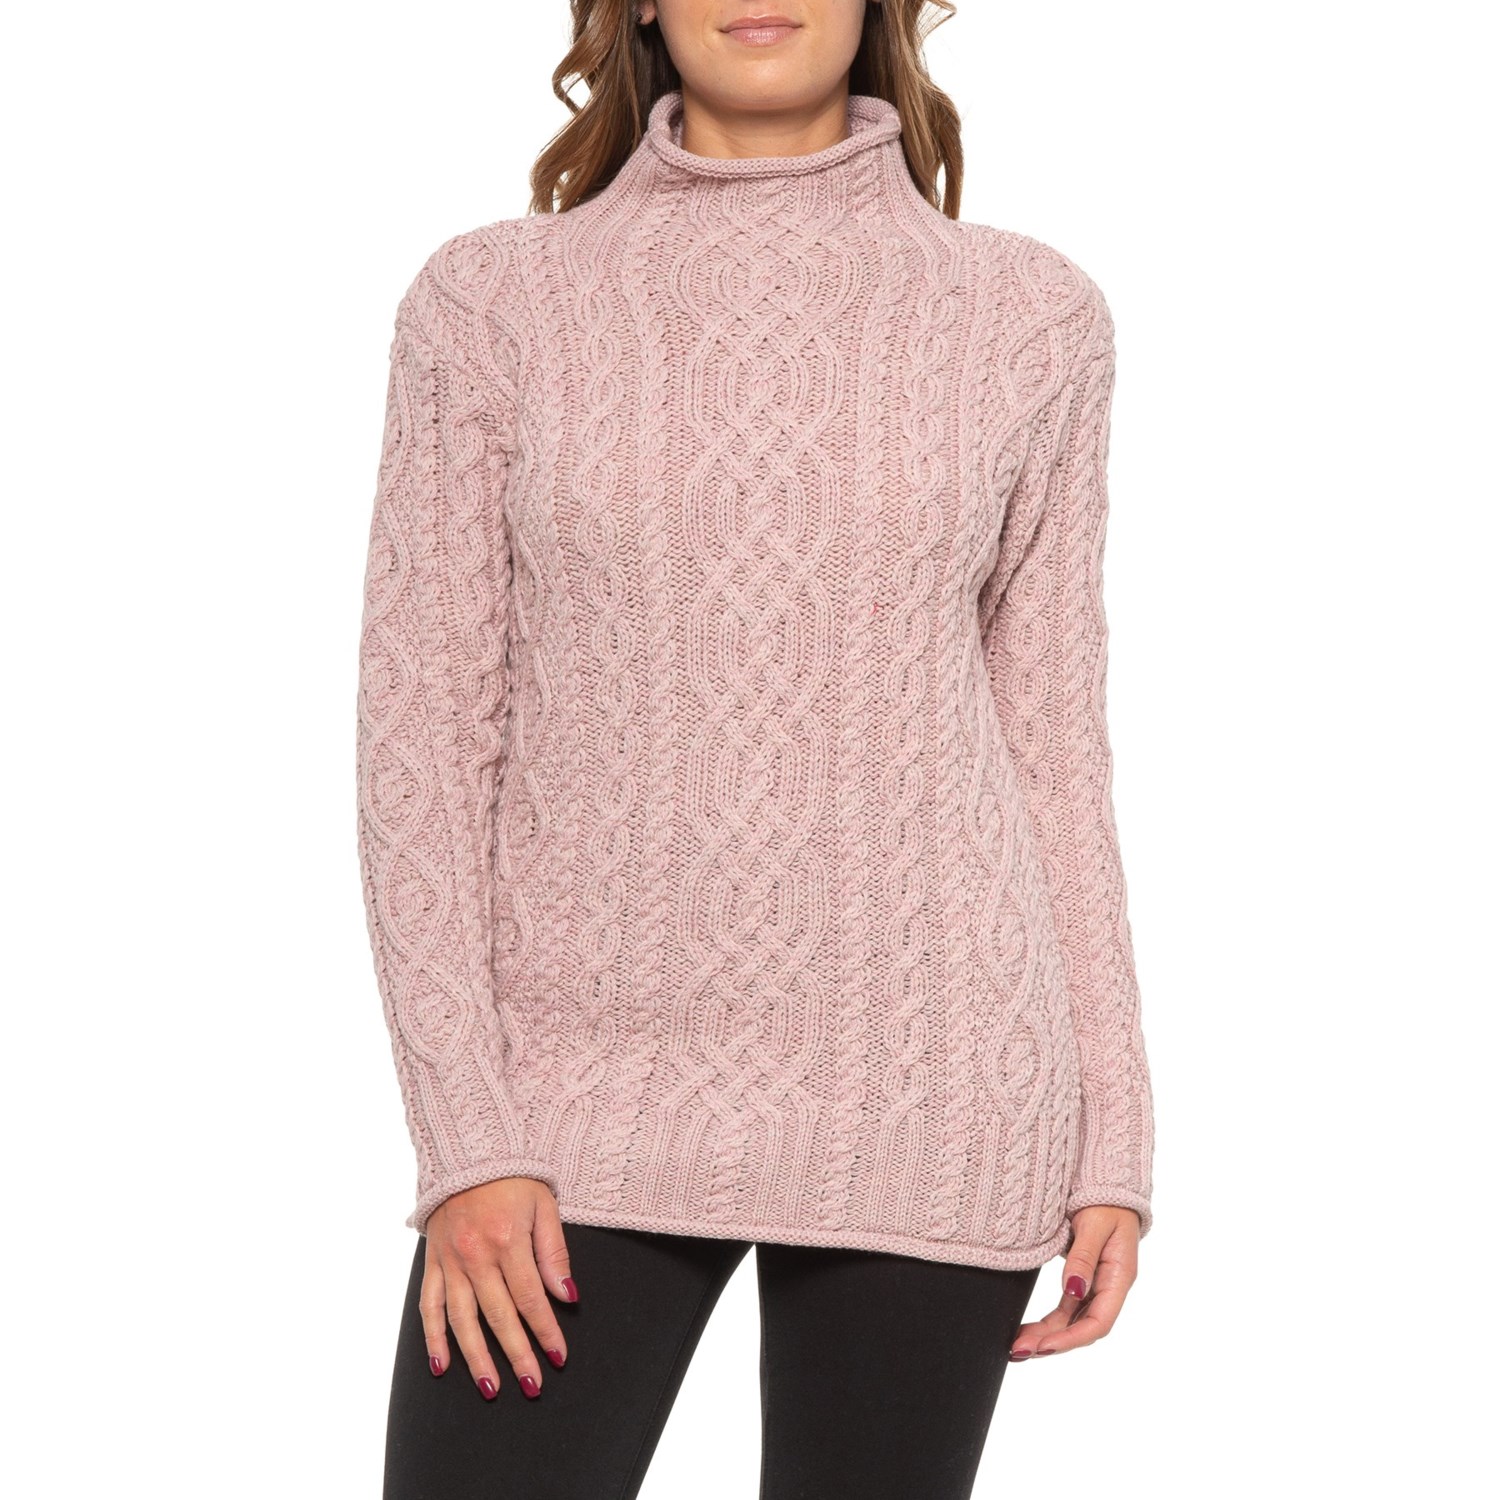 pink merino wool sweater